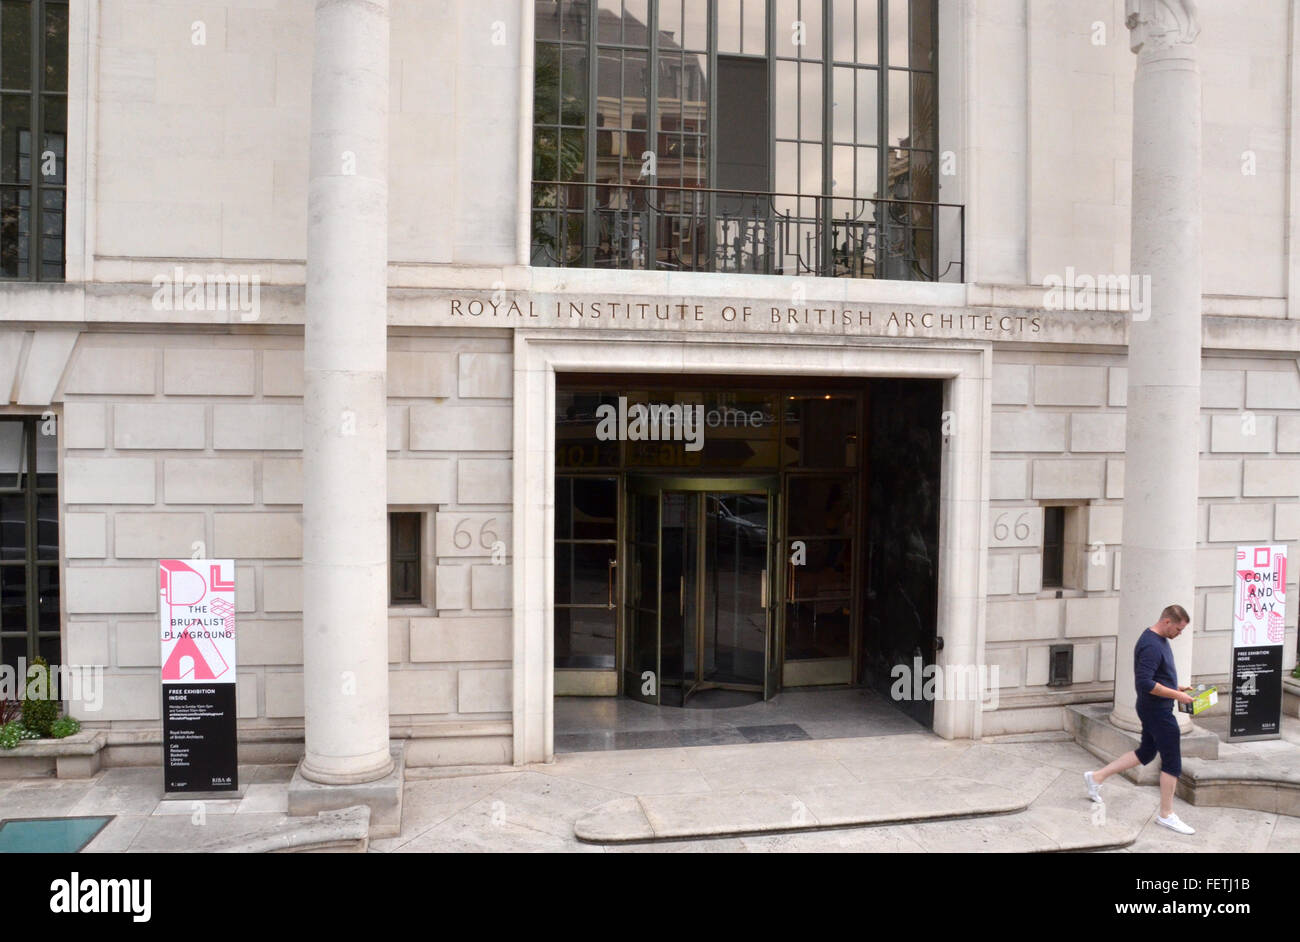 Londres - el 6 de agosto: el Real Instituto de Arquitectos Británicos, cuya sede se muestra en Londres el 6 de agosto de 2015, es un alojamiento Foto de stock